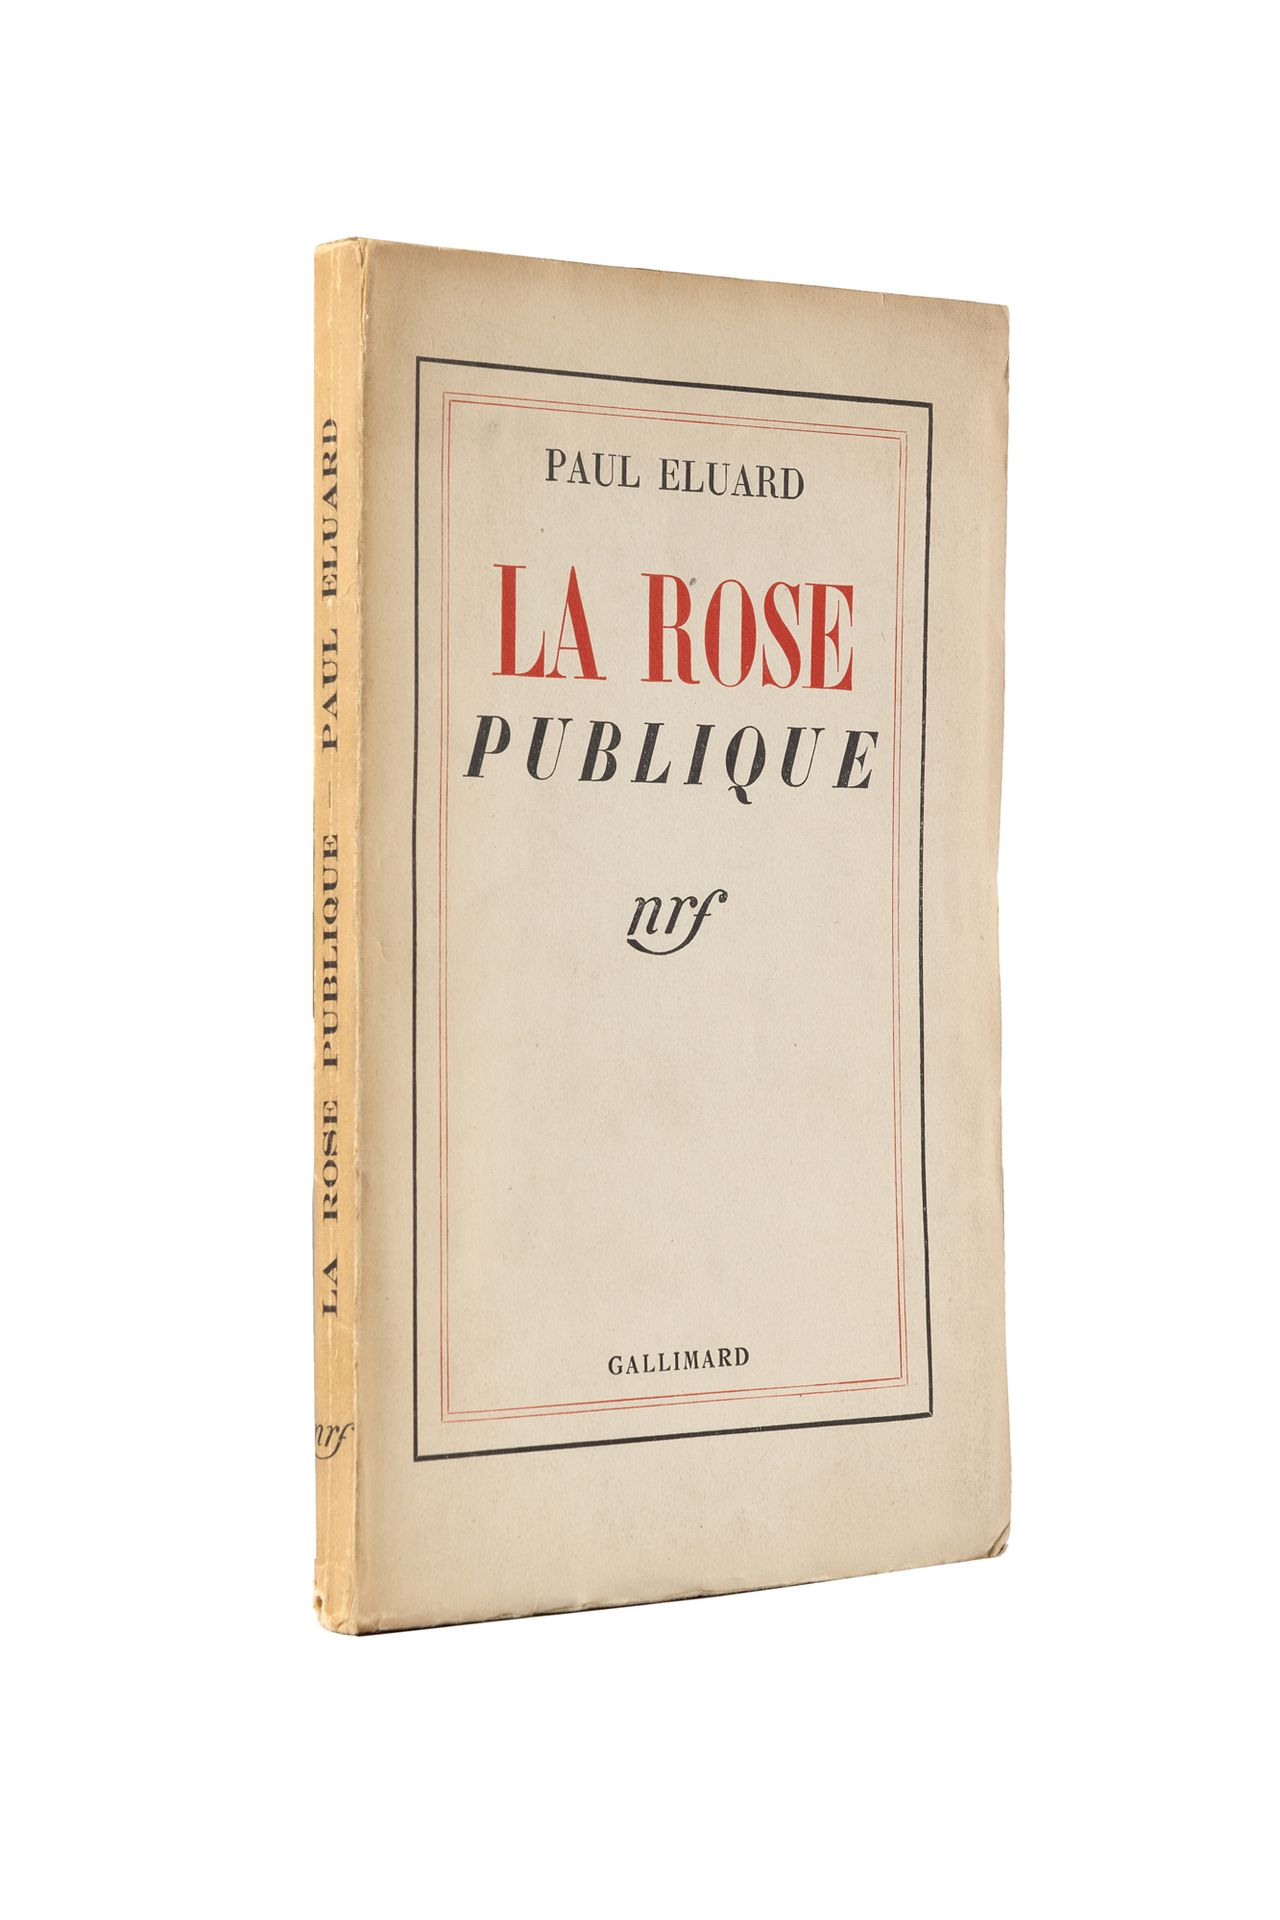 Null ÉLUARD, Paul (1895-1952) - La rose publique. Paris: Gallimard, 1934.

A pre&hellip;